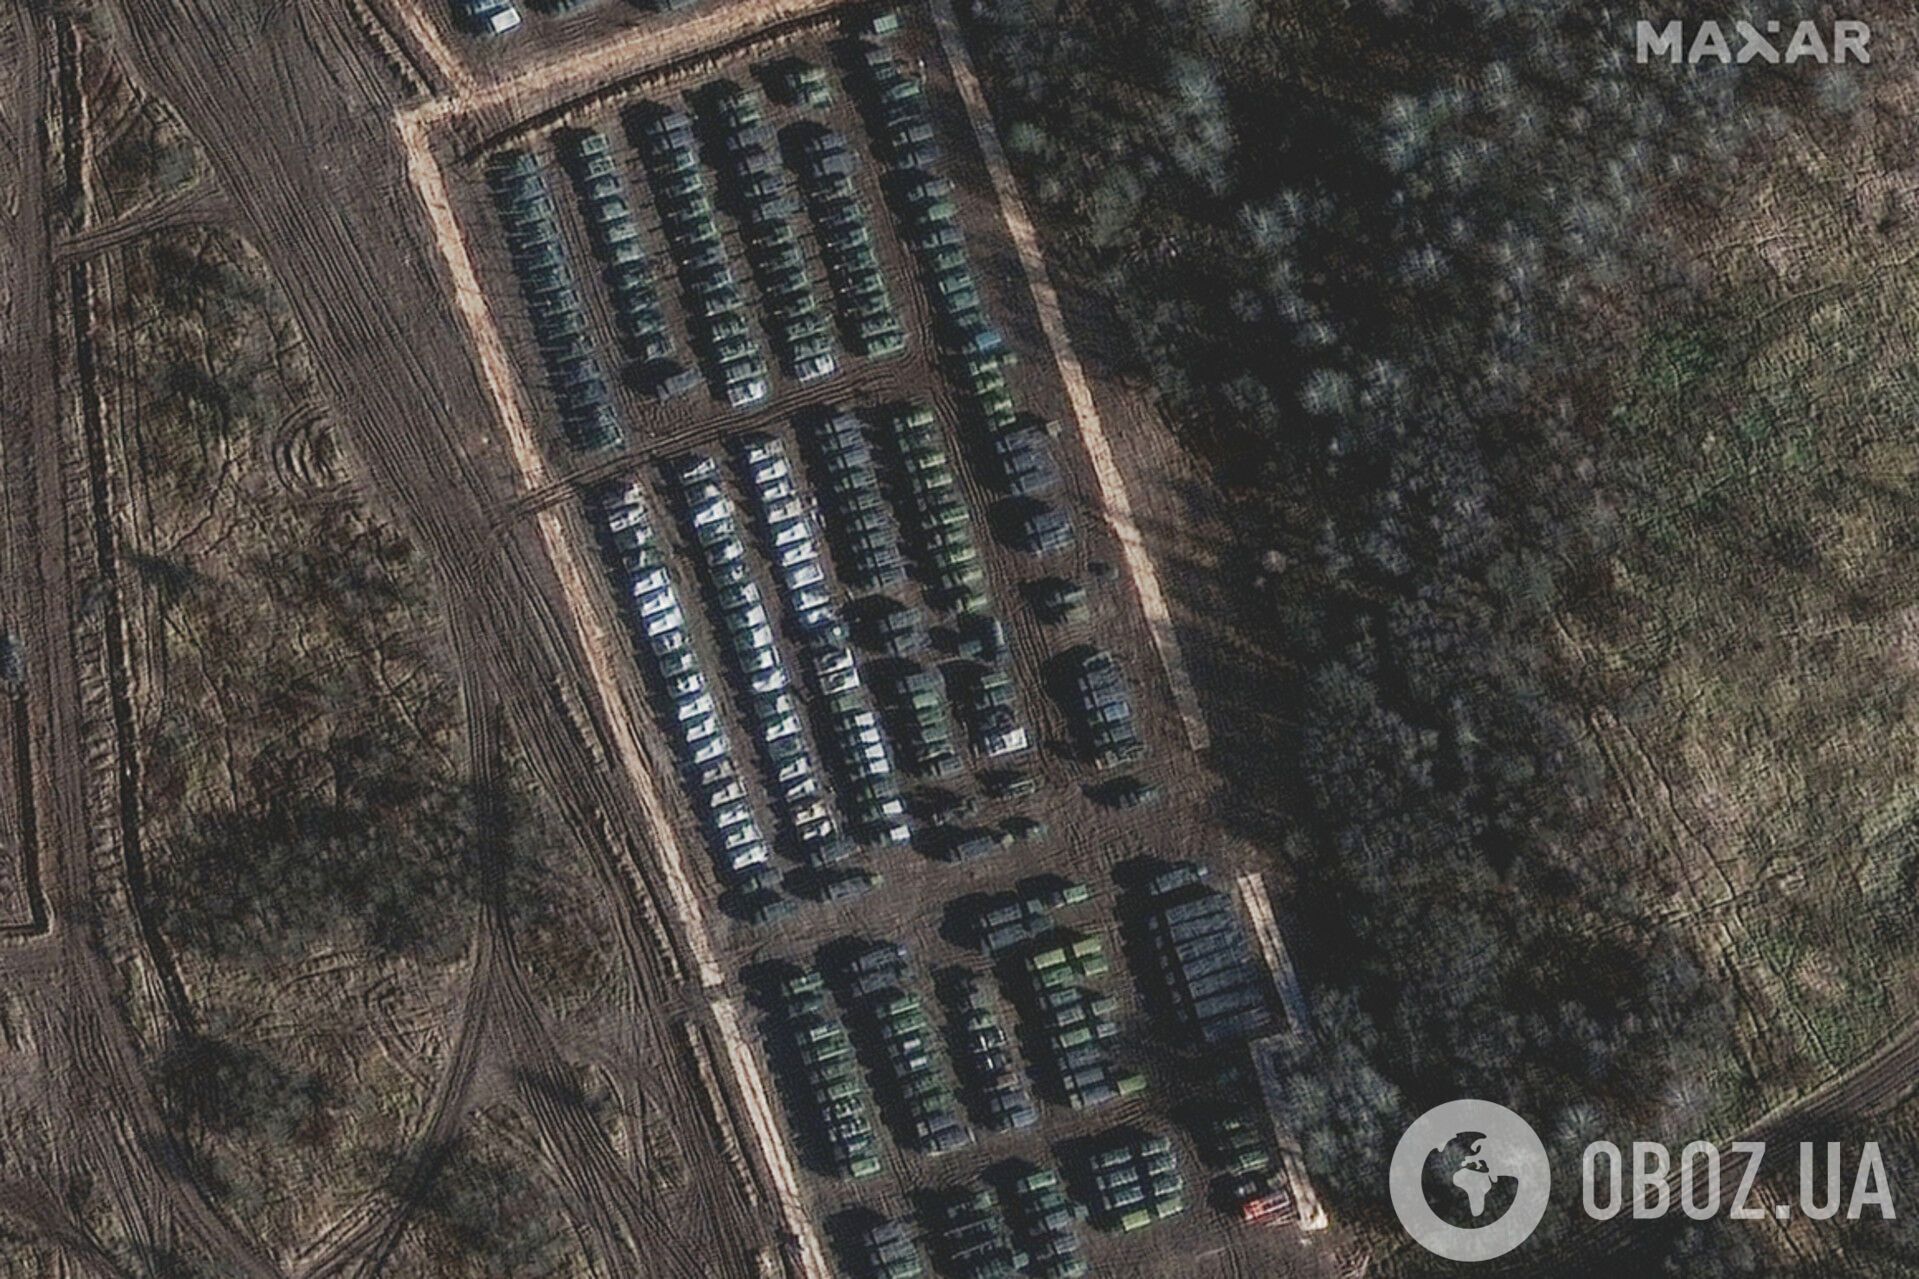 Самоходная артиллерийская установка и другое оборудование в Ельне, Россия